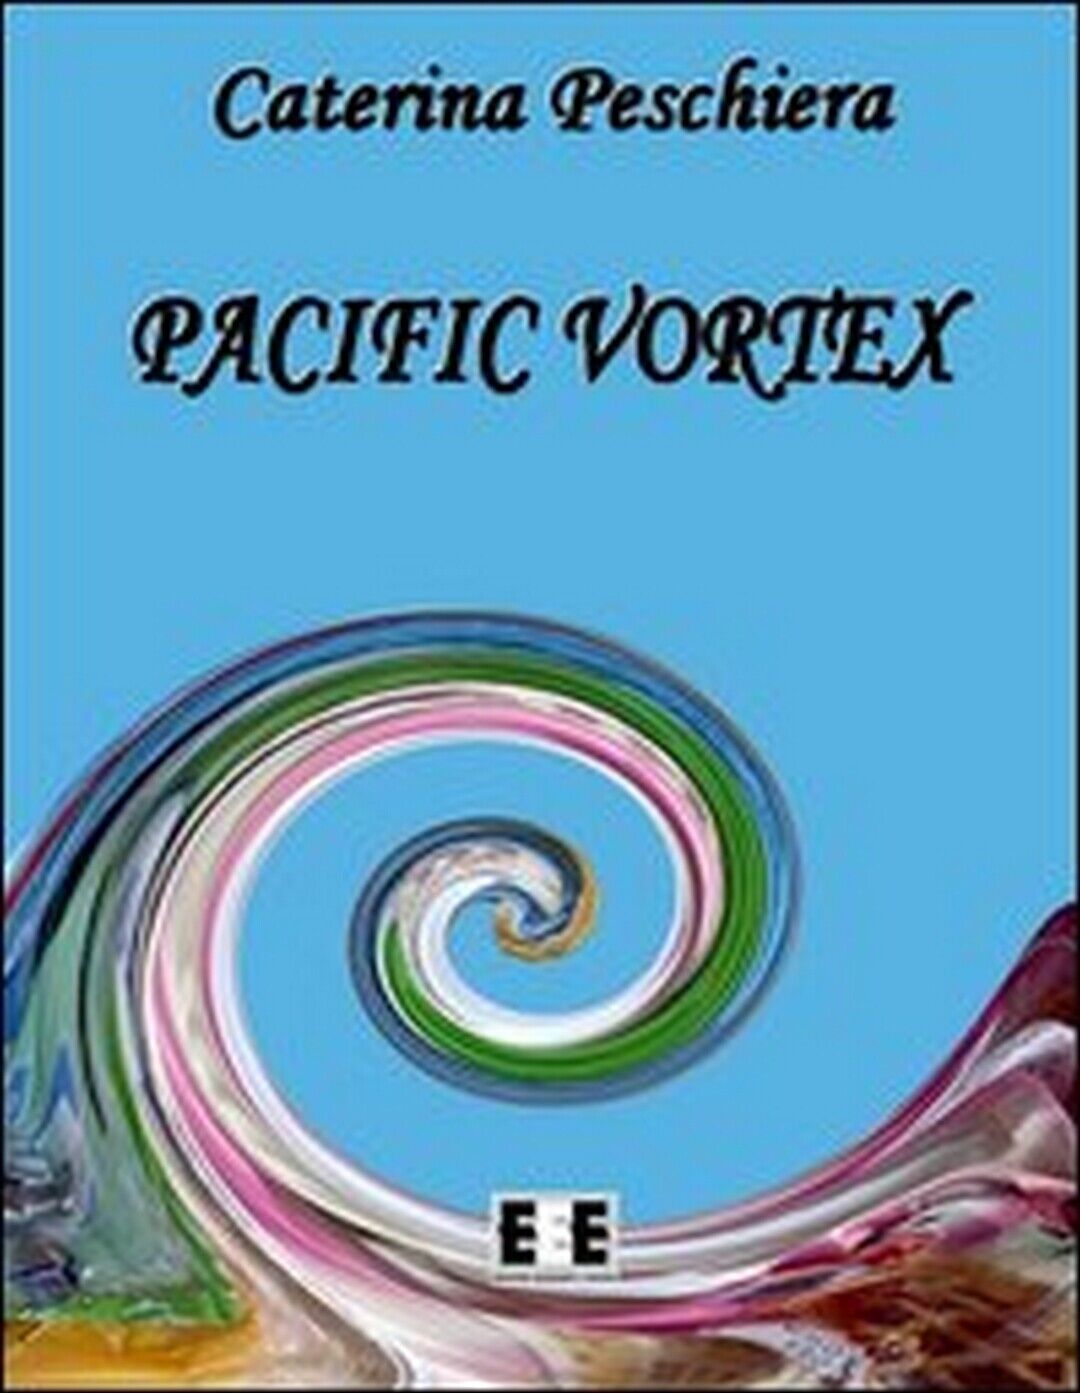 Pacific vortex  di Caterina Peschiera,  2013,  Eee-edizioni Esordienti